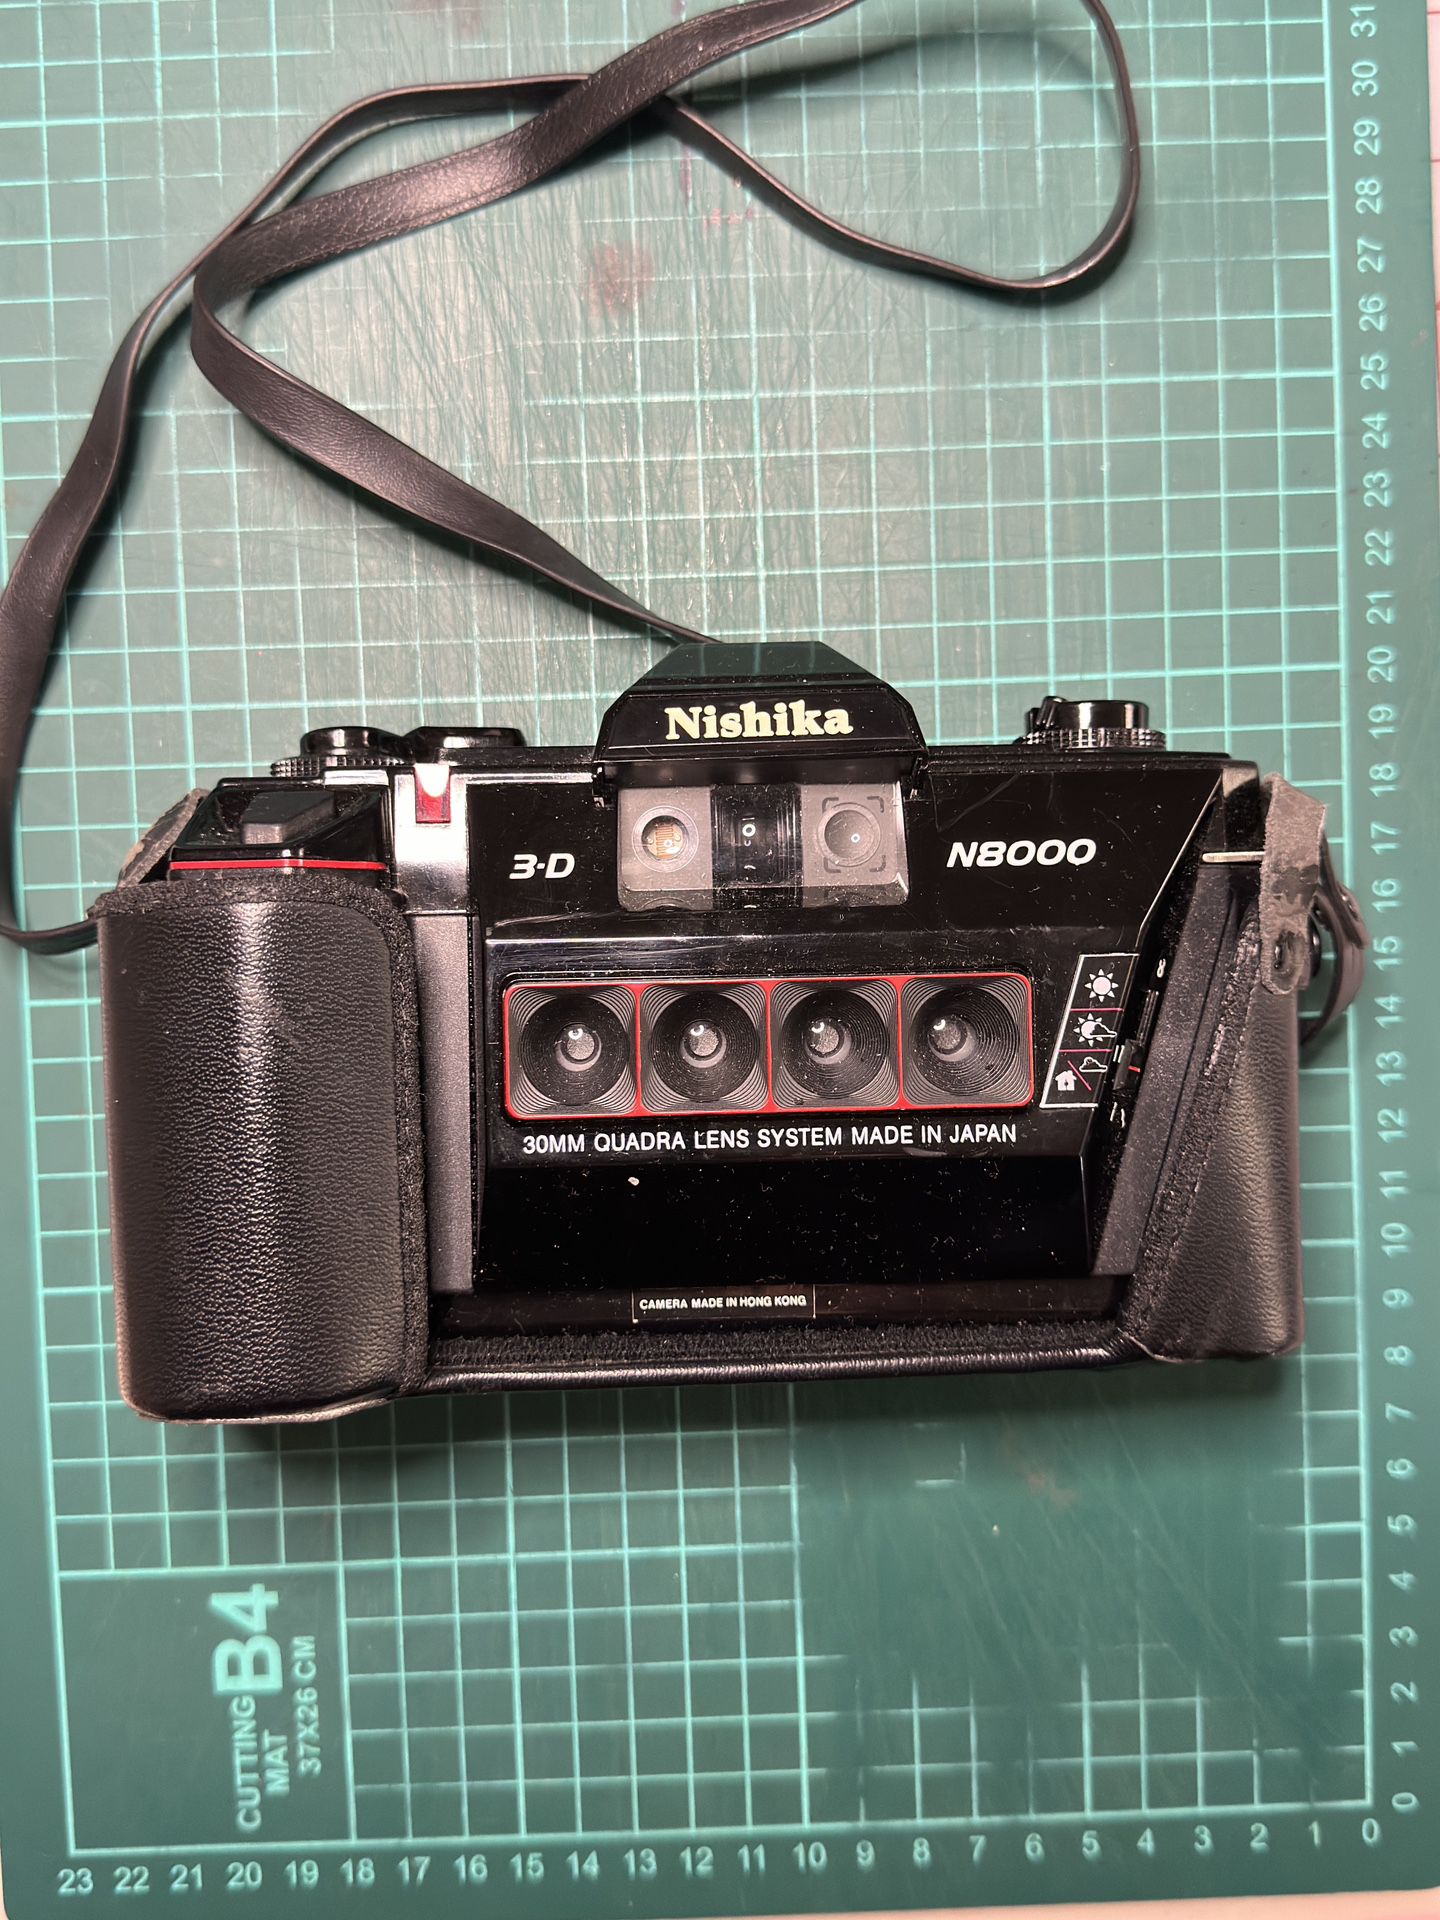 Nishika N8000 stereoscopic 3D Camera